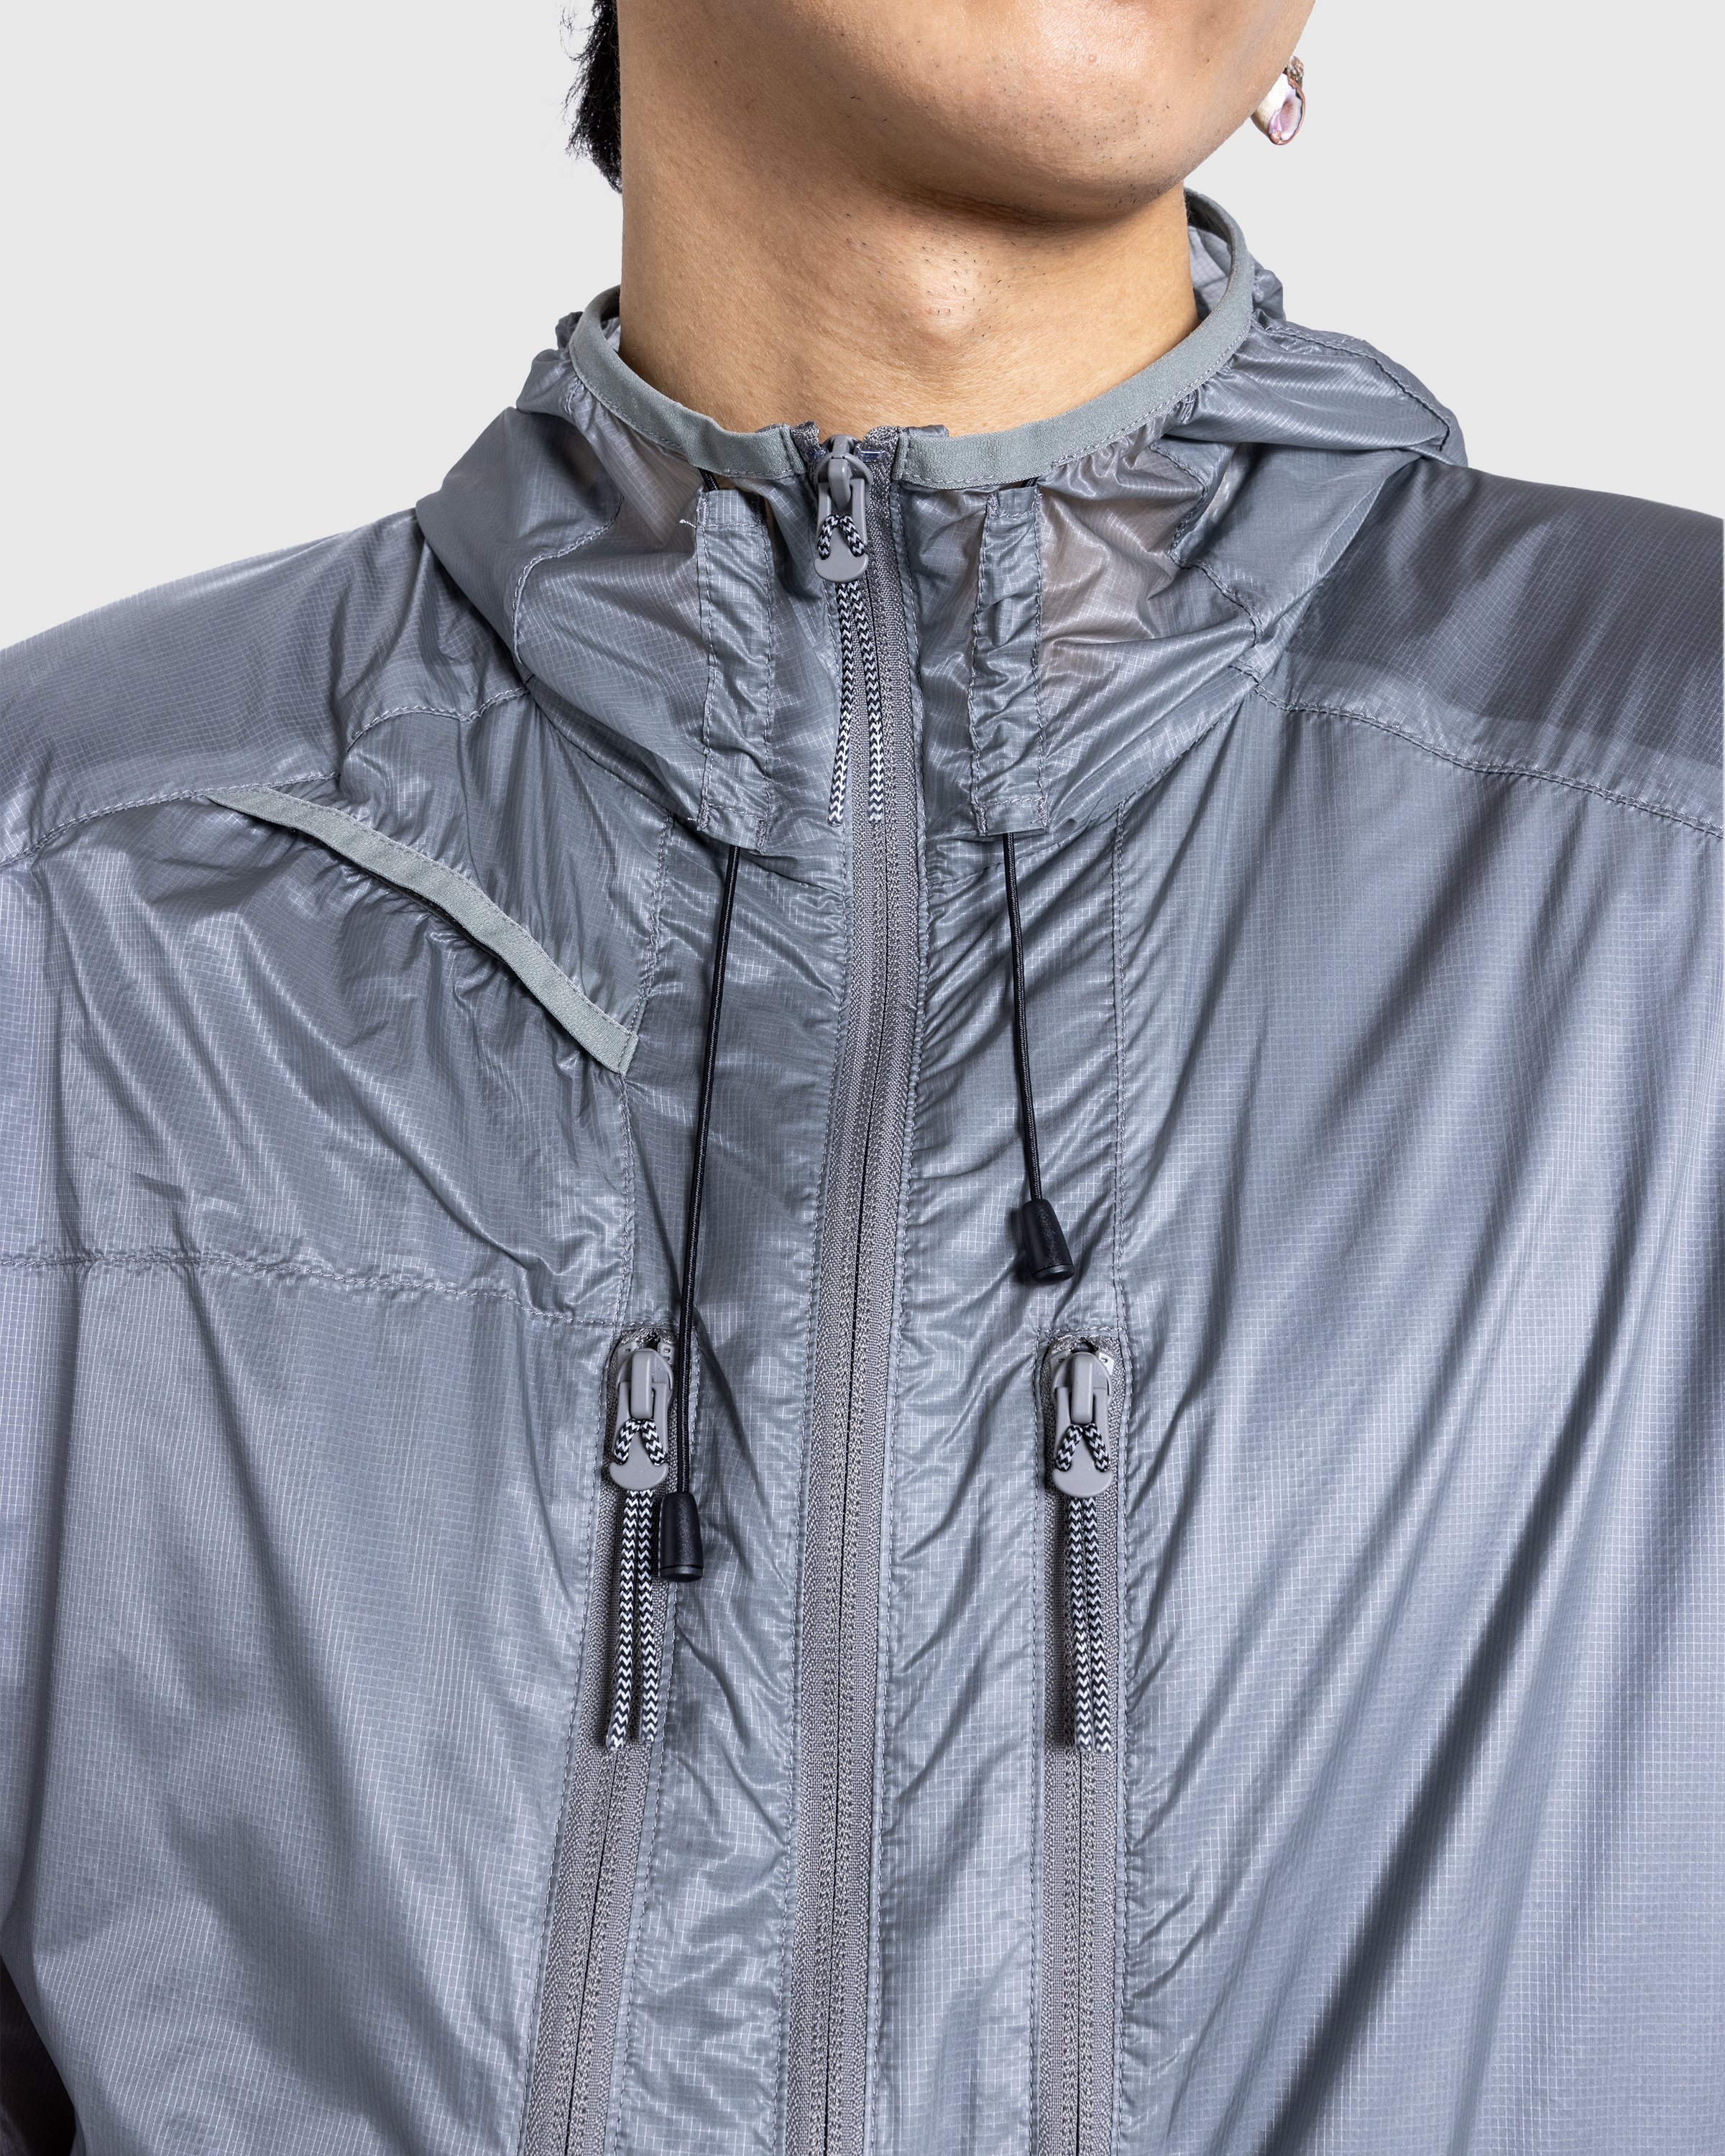 ROA - Synthetic Jacket Transparent Miriage Grey - Clothing -  - Image 5